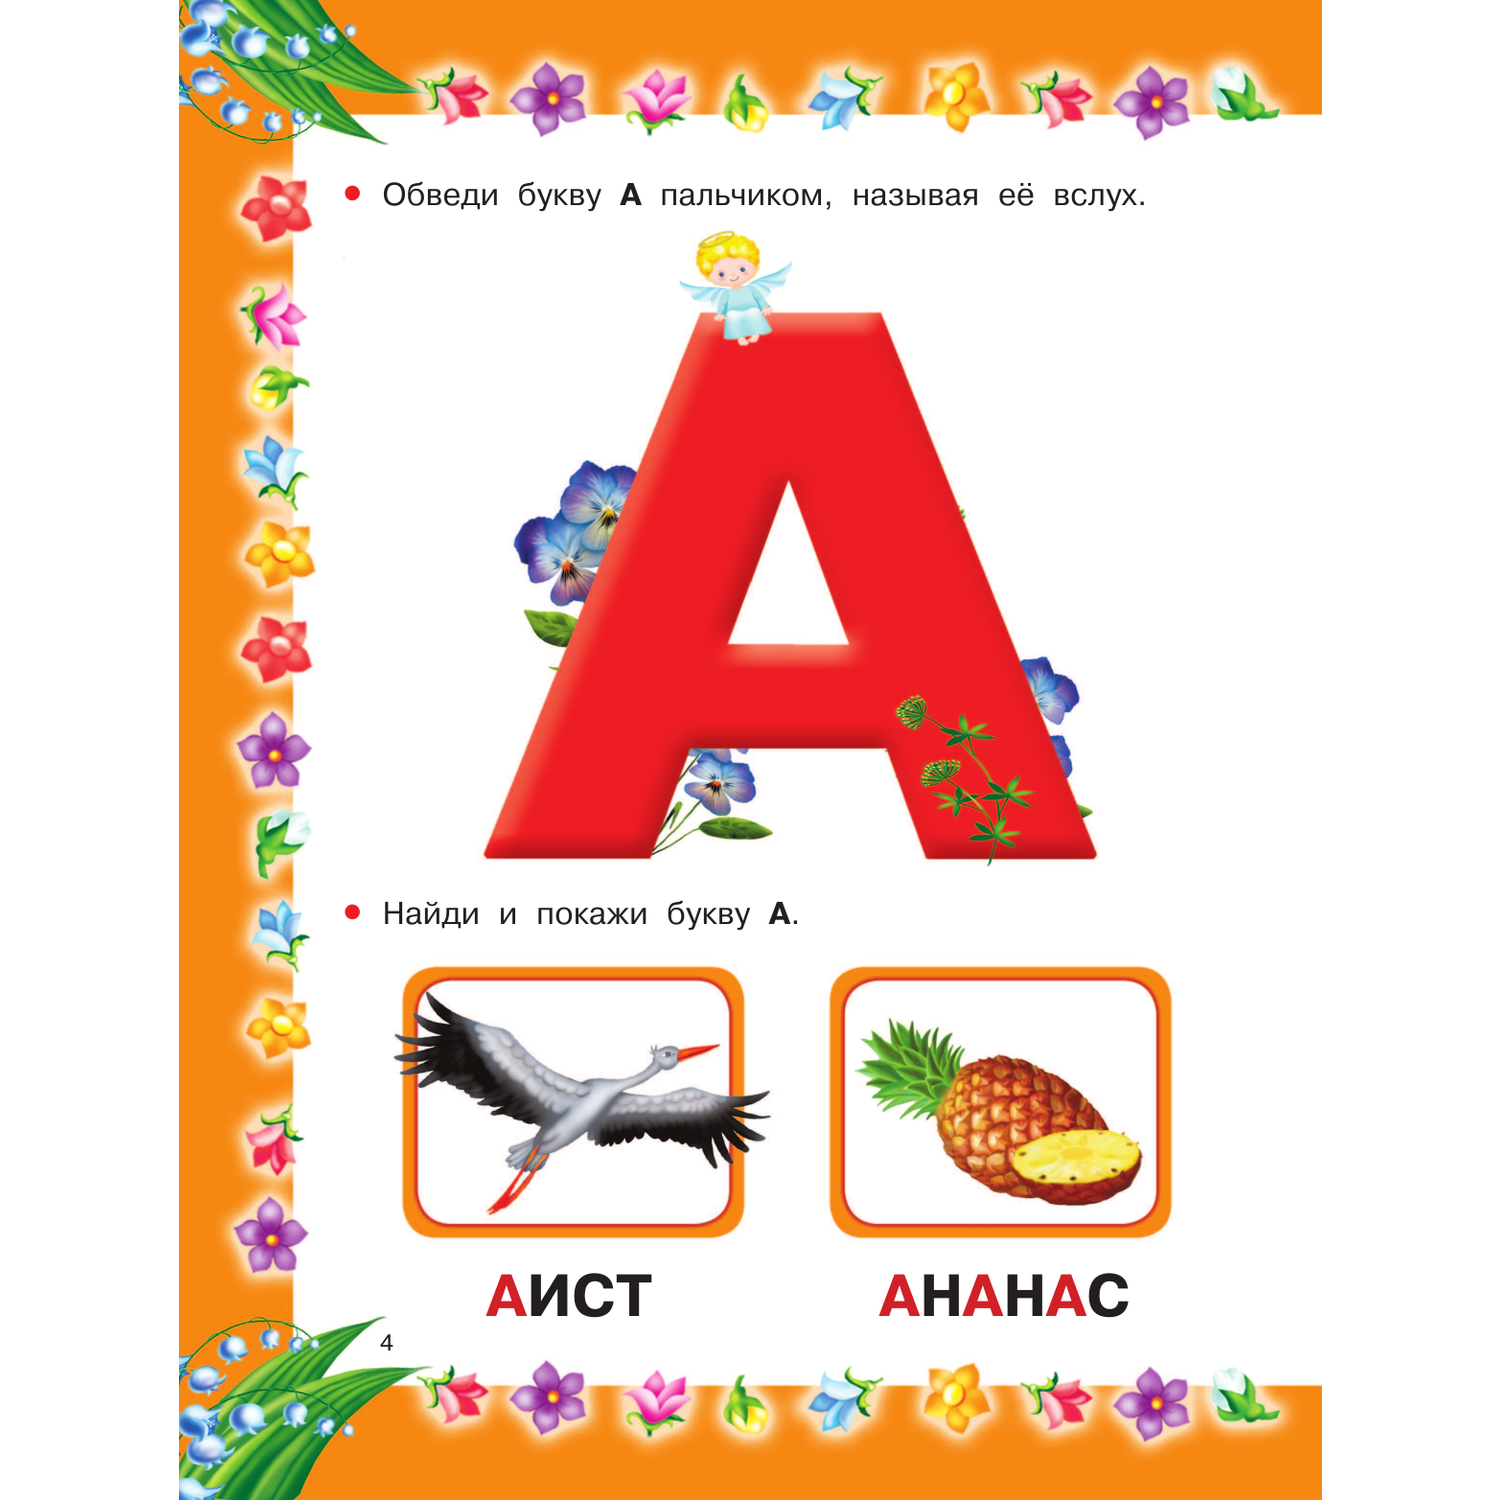 Книга АСТ Азбука с крупными буквами для самых маленьких - фото 6